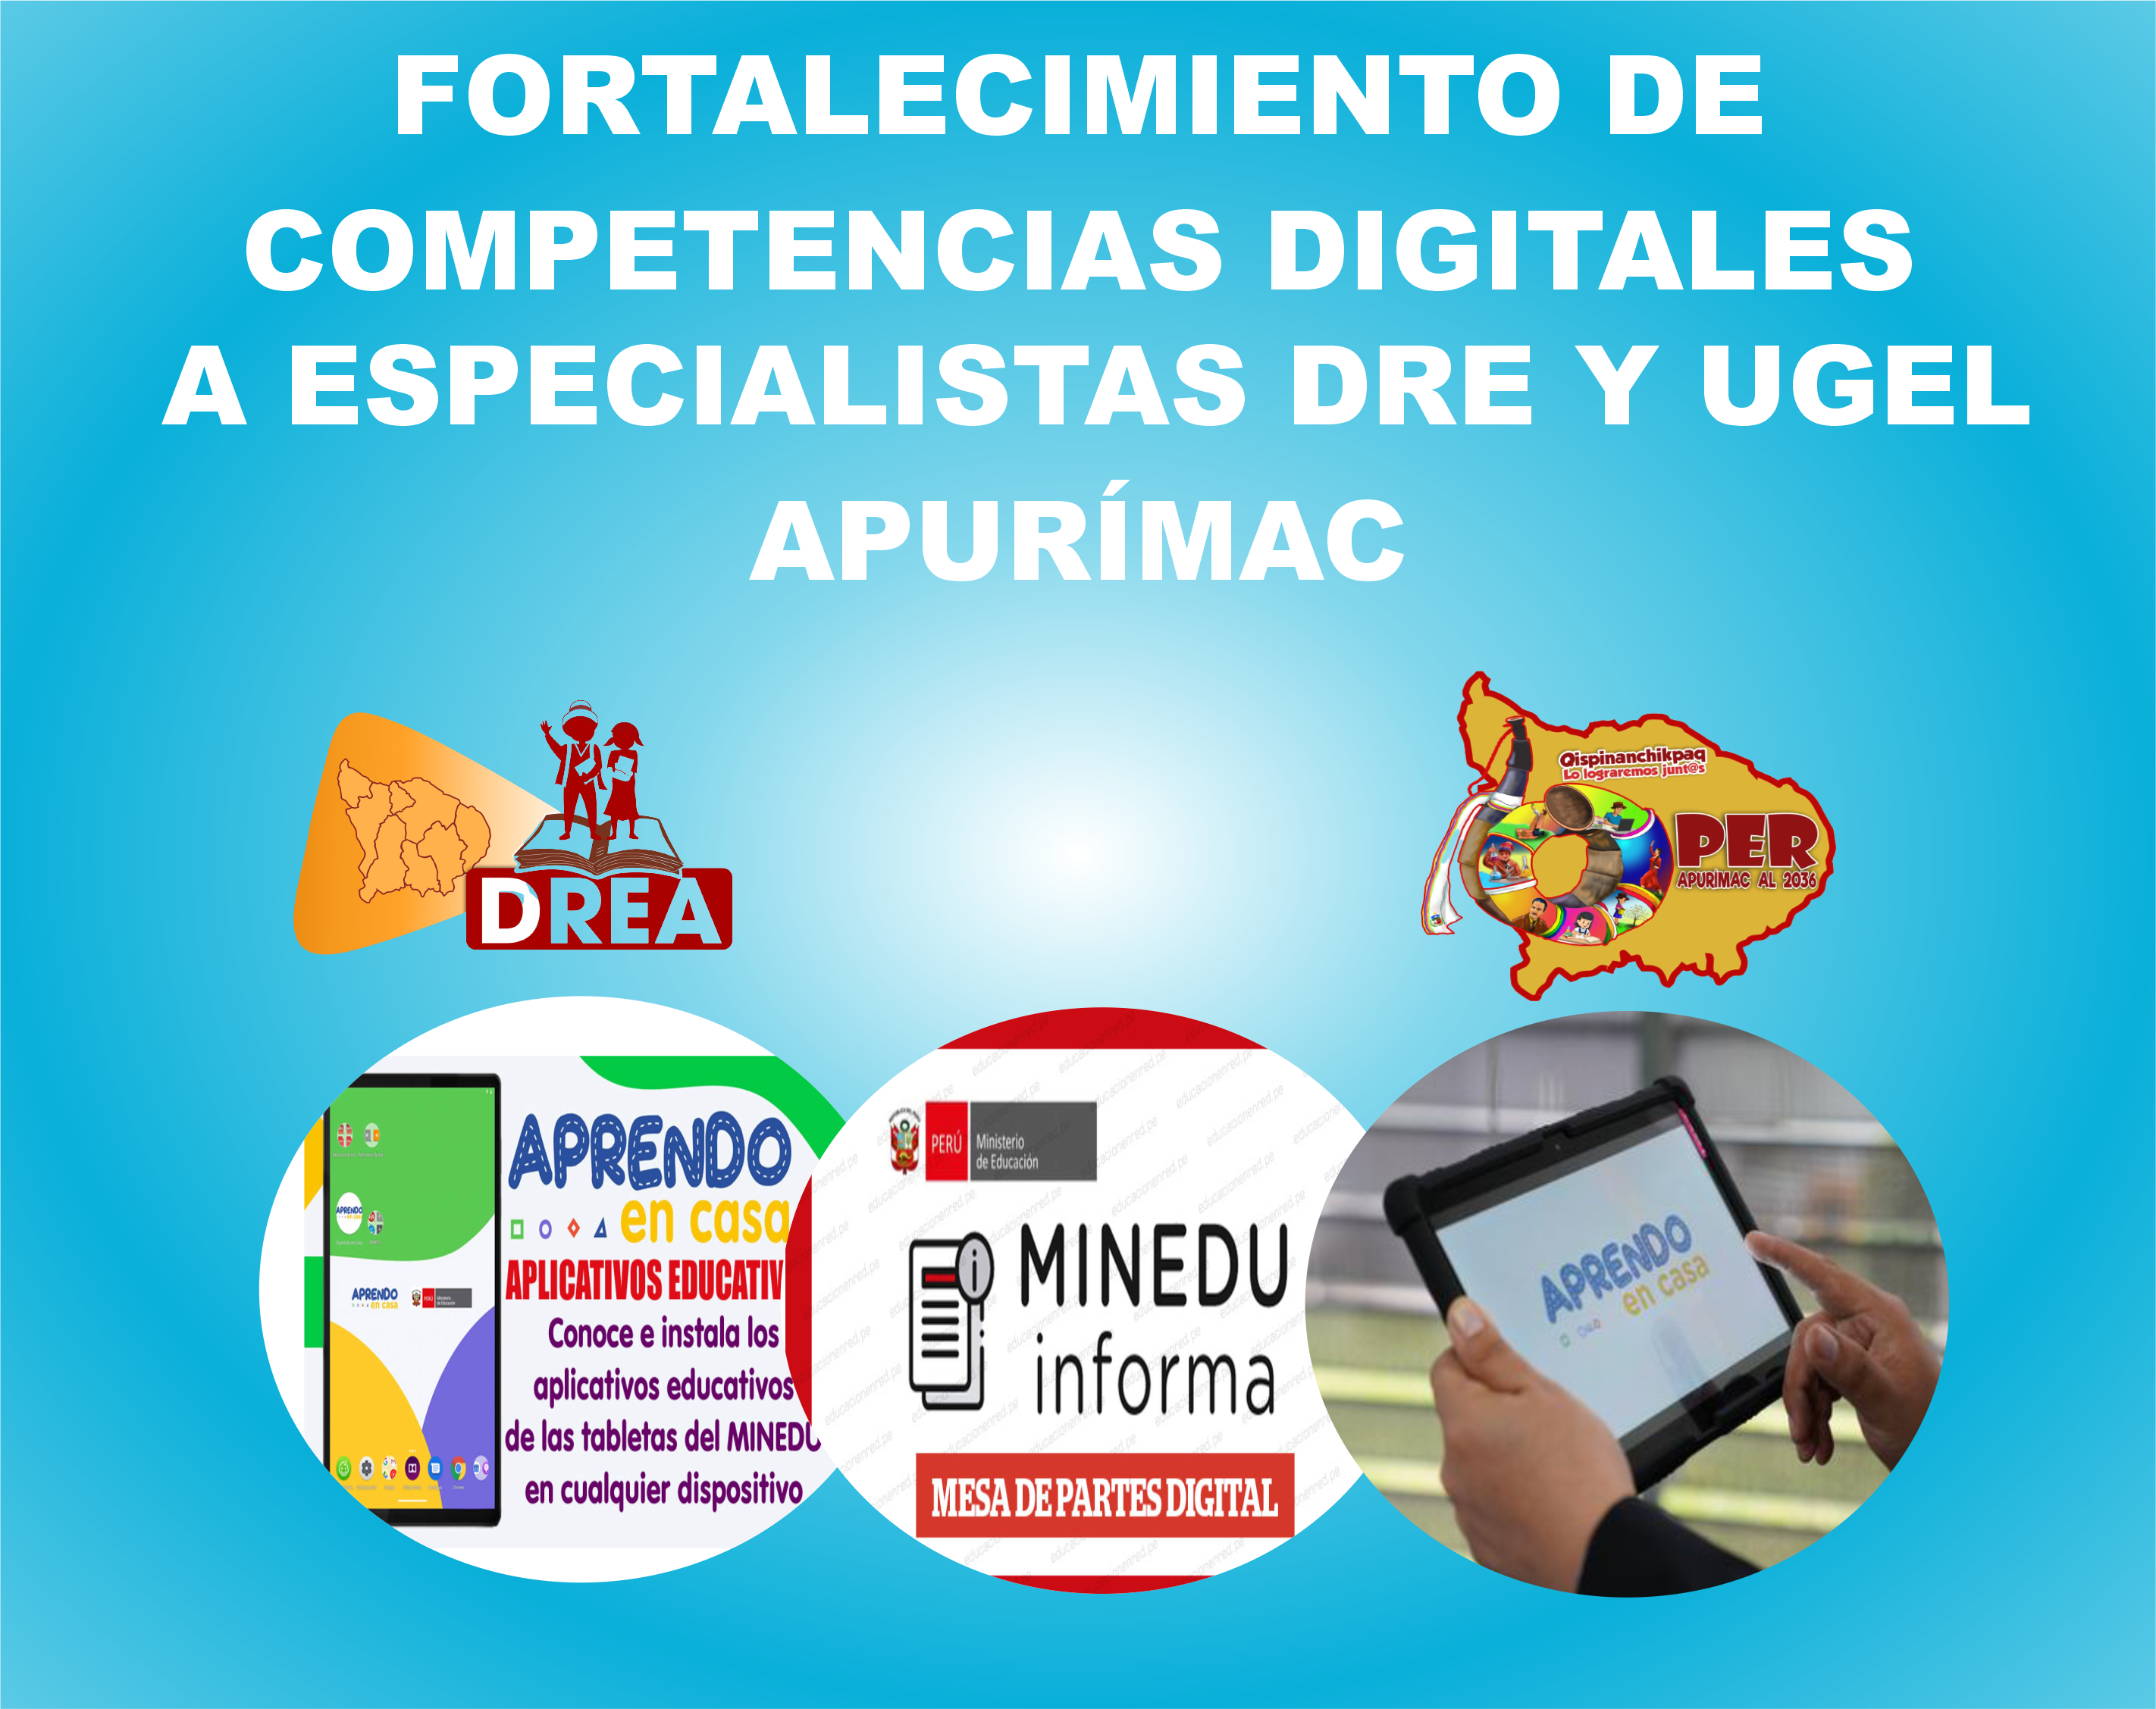 FORTALECIMIENTO DE COMPETENCIAS DIGITALES A ESPECIALISTAS DRE Y UGEL APURÍMAC